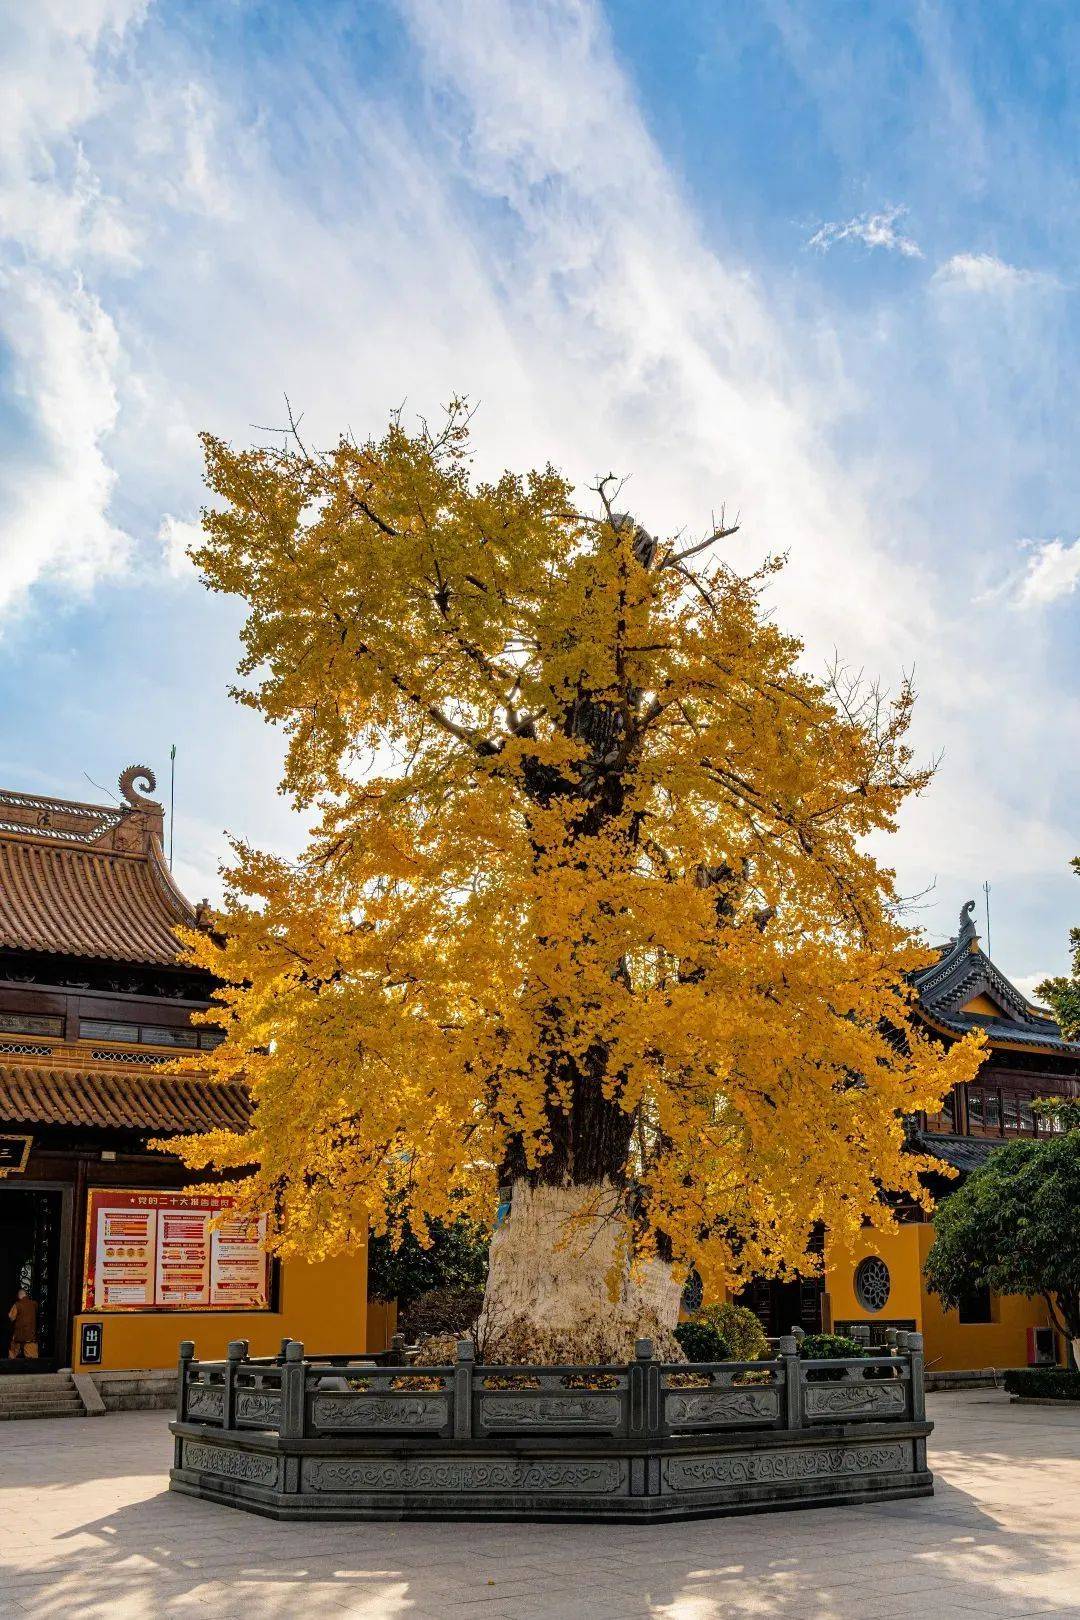 银杏村因村中两棵千年银杏树而得名